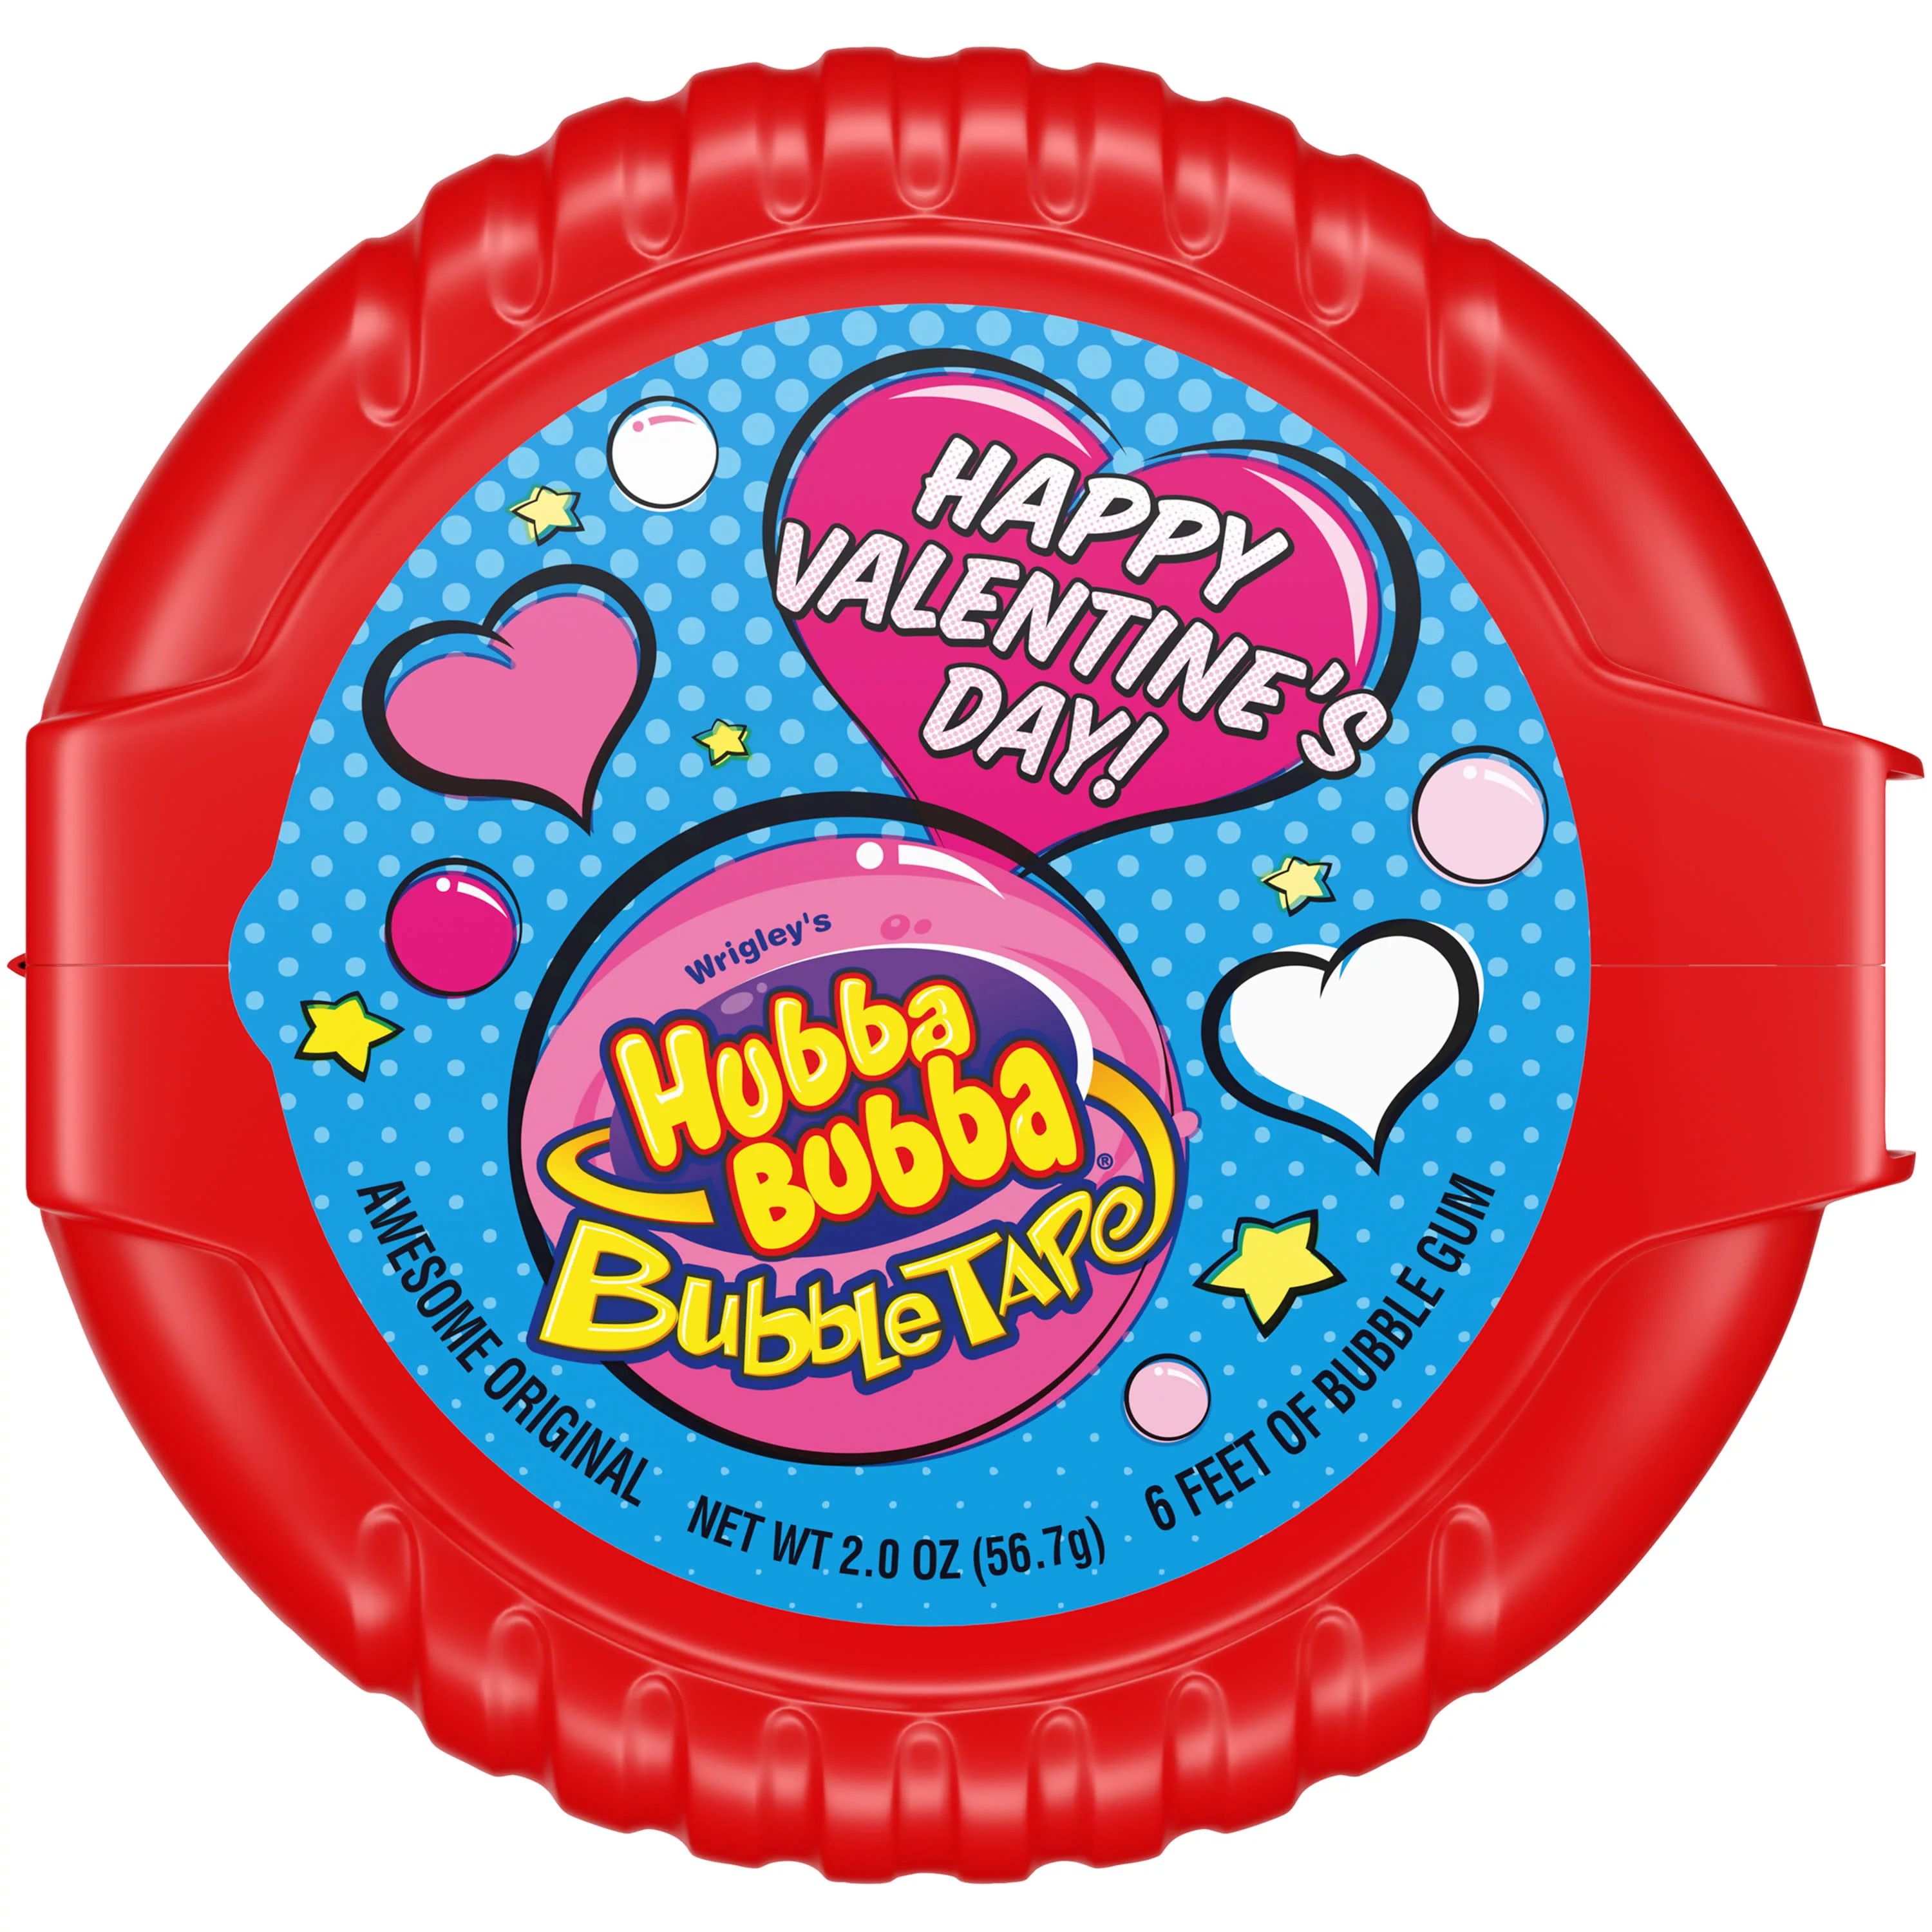 Hubba Bubba Bubble Tape Chewing Gum, Valentine's Bubble Gum - 2 oz - Walmart.com | Walmart (US)